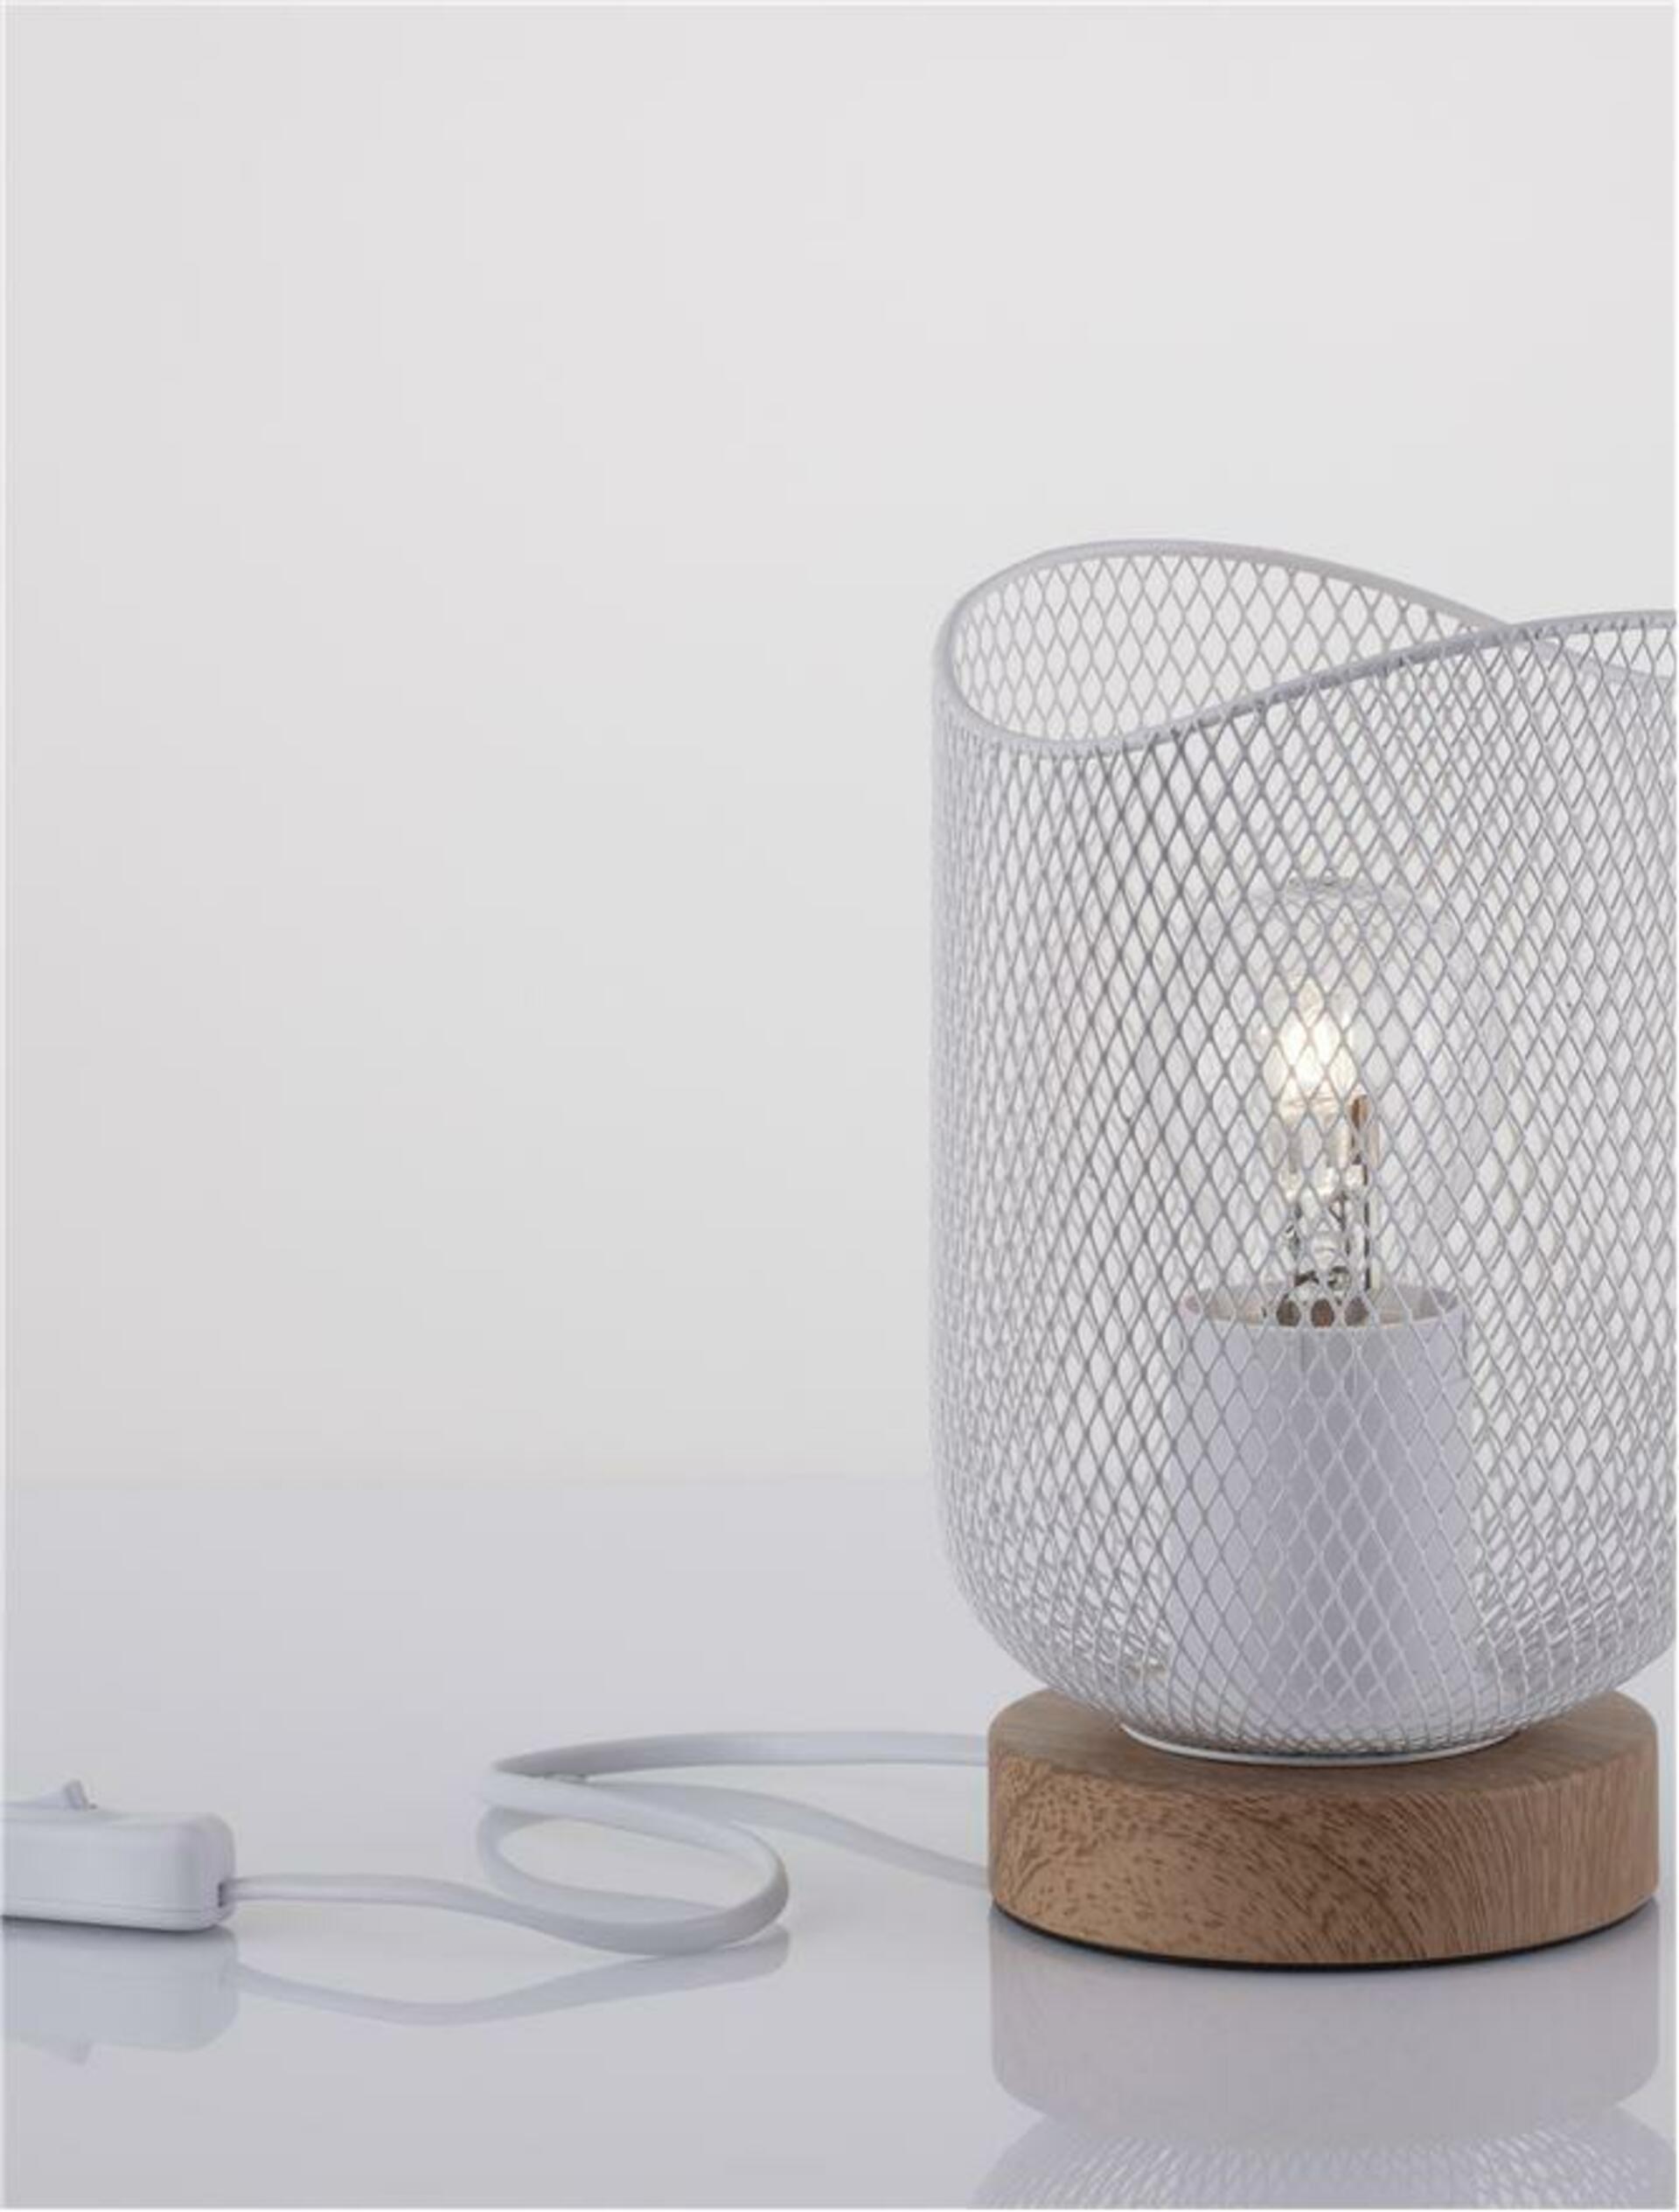 NOVA LUCE stolní lampa LYRON matný bílý kov přírodní dřevo E27 1x12W 230V IP20 bez žárovky 9555800